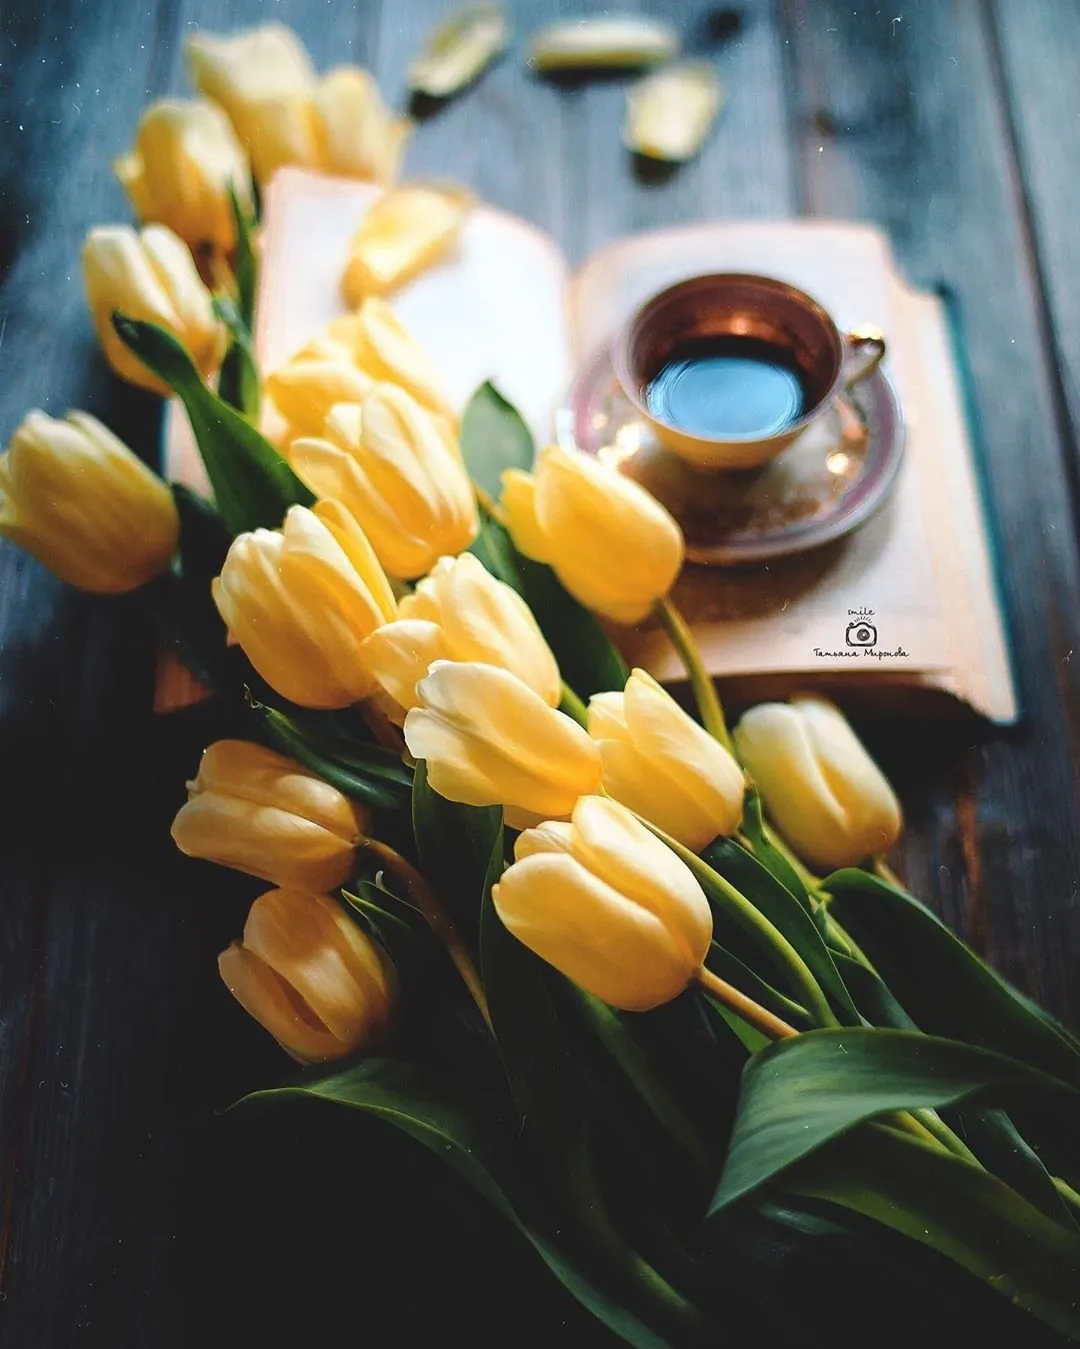 Тюльпаны и кофе. Букет тюльпанов и кофе. Чашка кофе с желтыми тюльпанами. Натюрморт с тюльпанами. Кофе и тюльпаны картинки